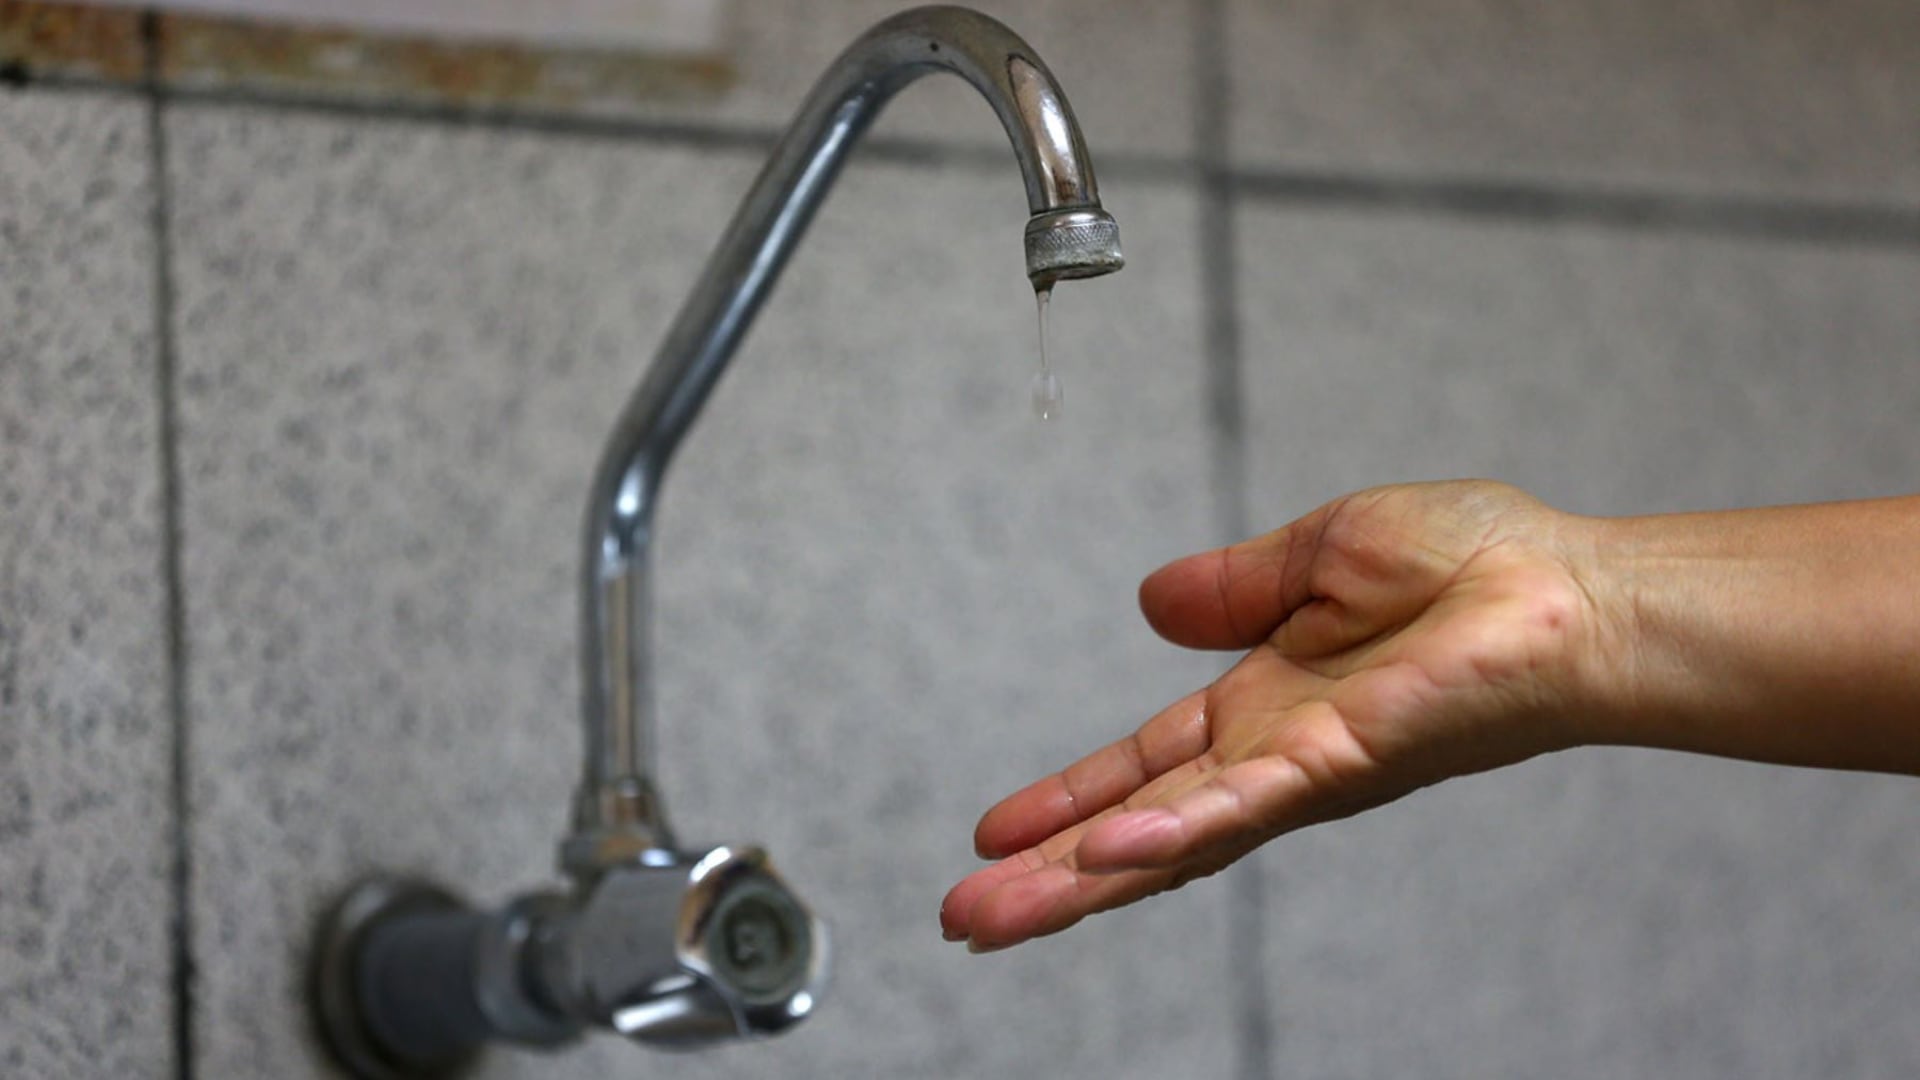 Sedapal anunció corte de agua desde el 6 de octubre por más de 48 horas en varios distritos de Lima| Andina